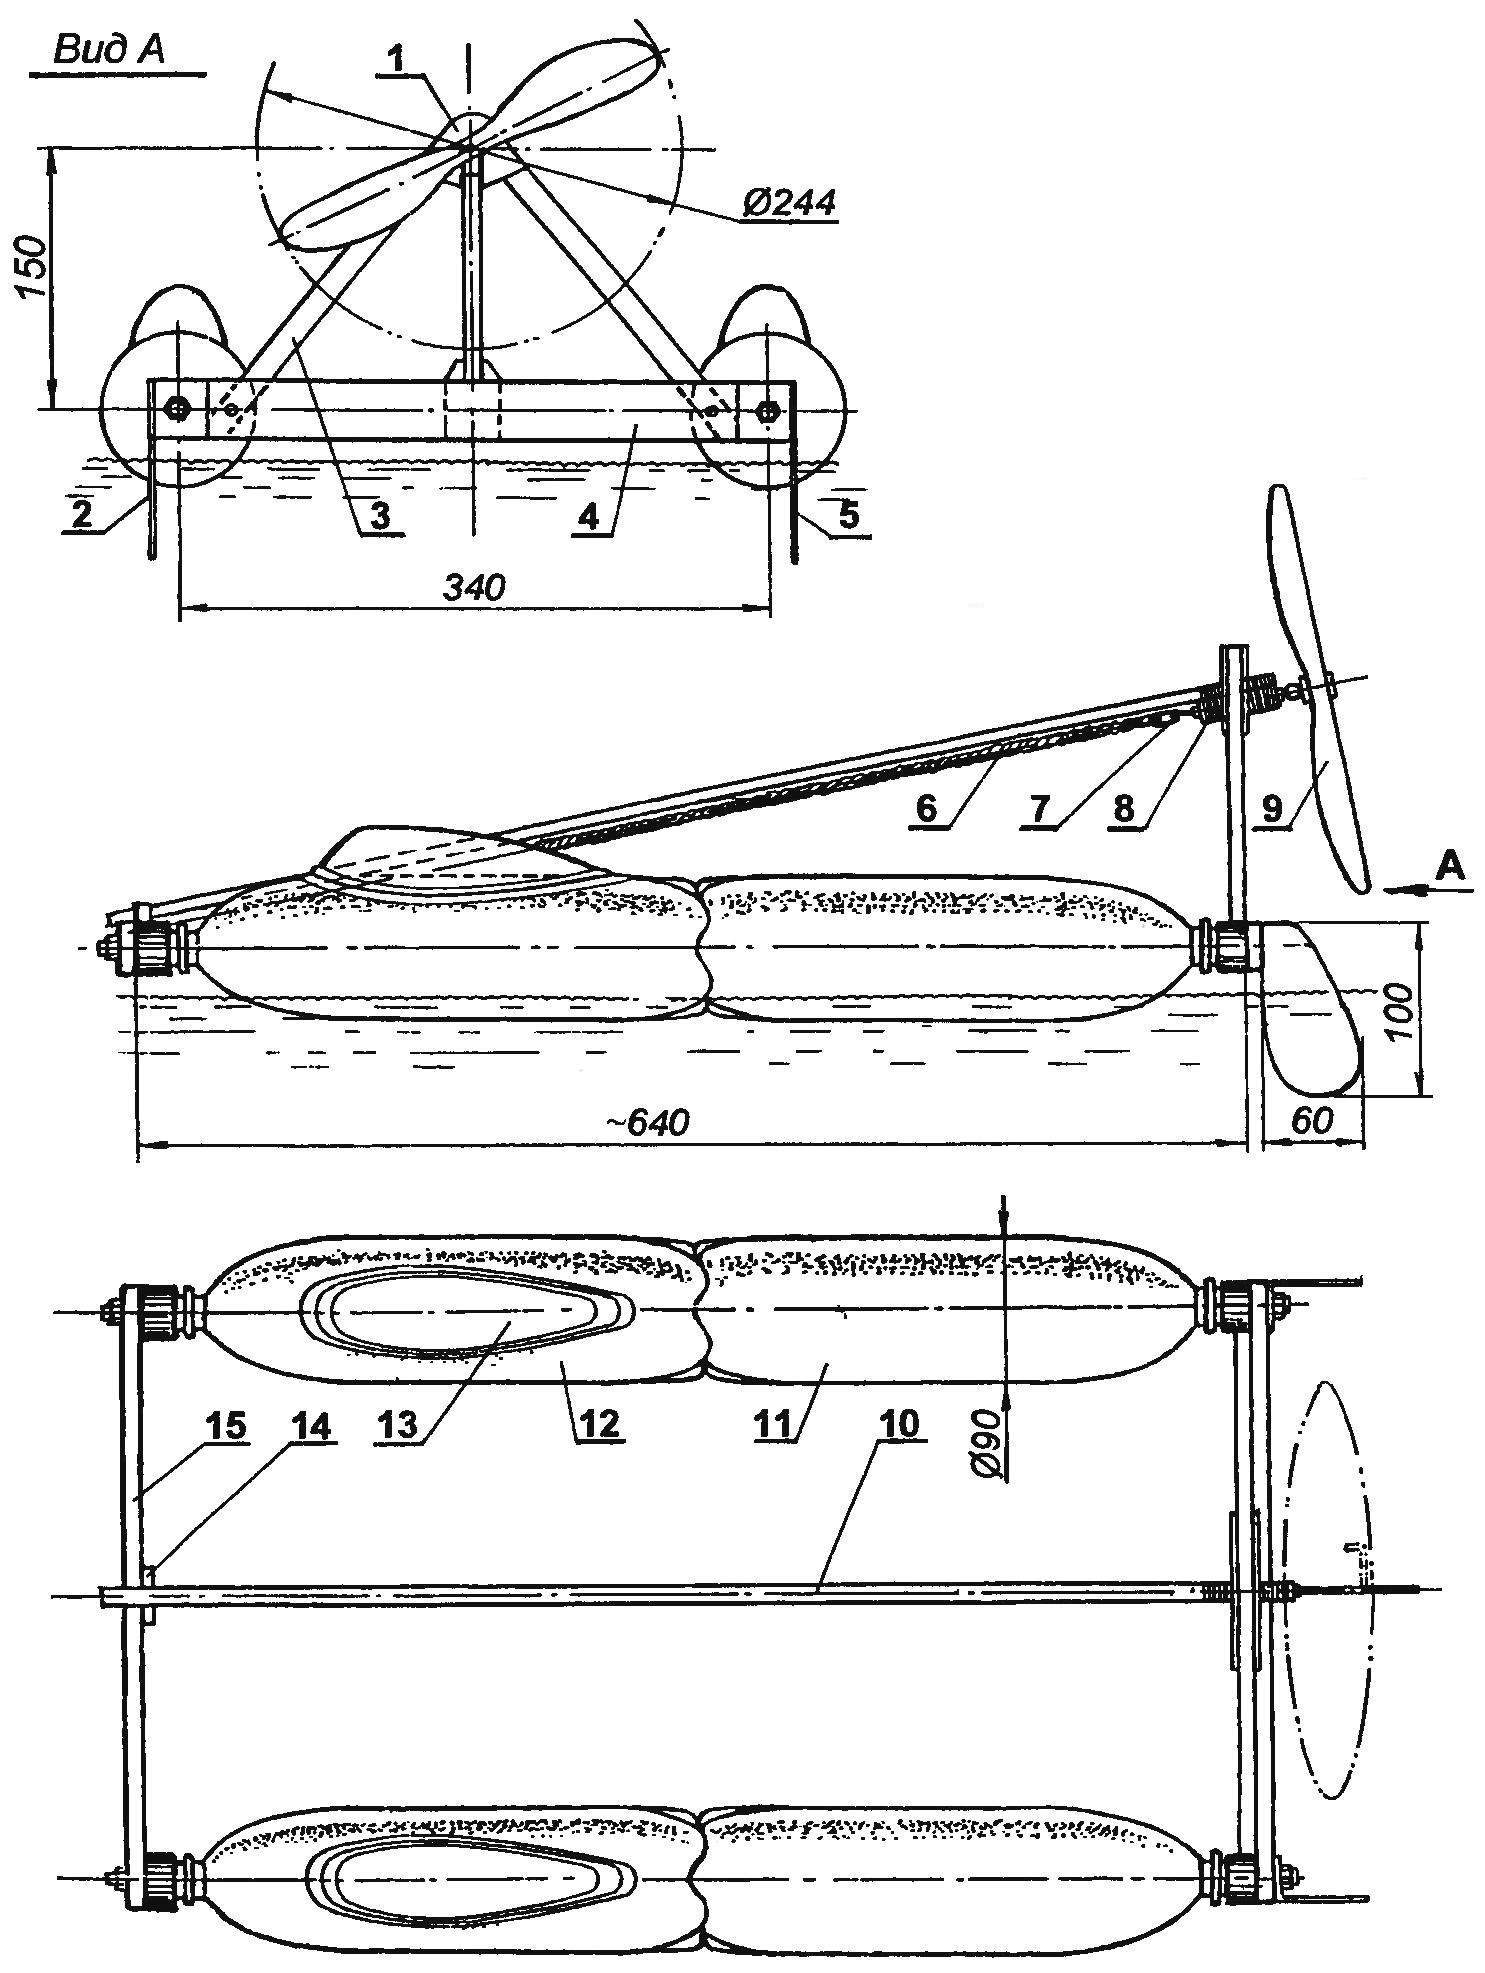 Rezinomotornaya planing catamaran with aerodiesel